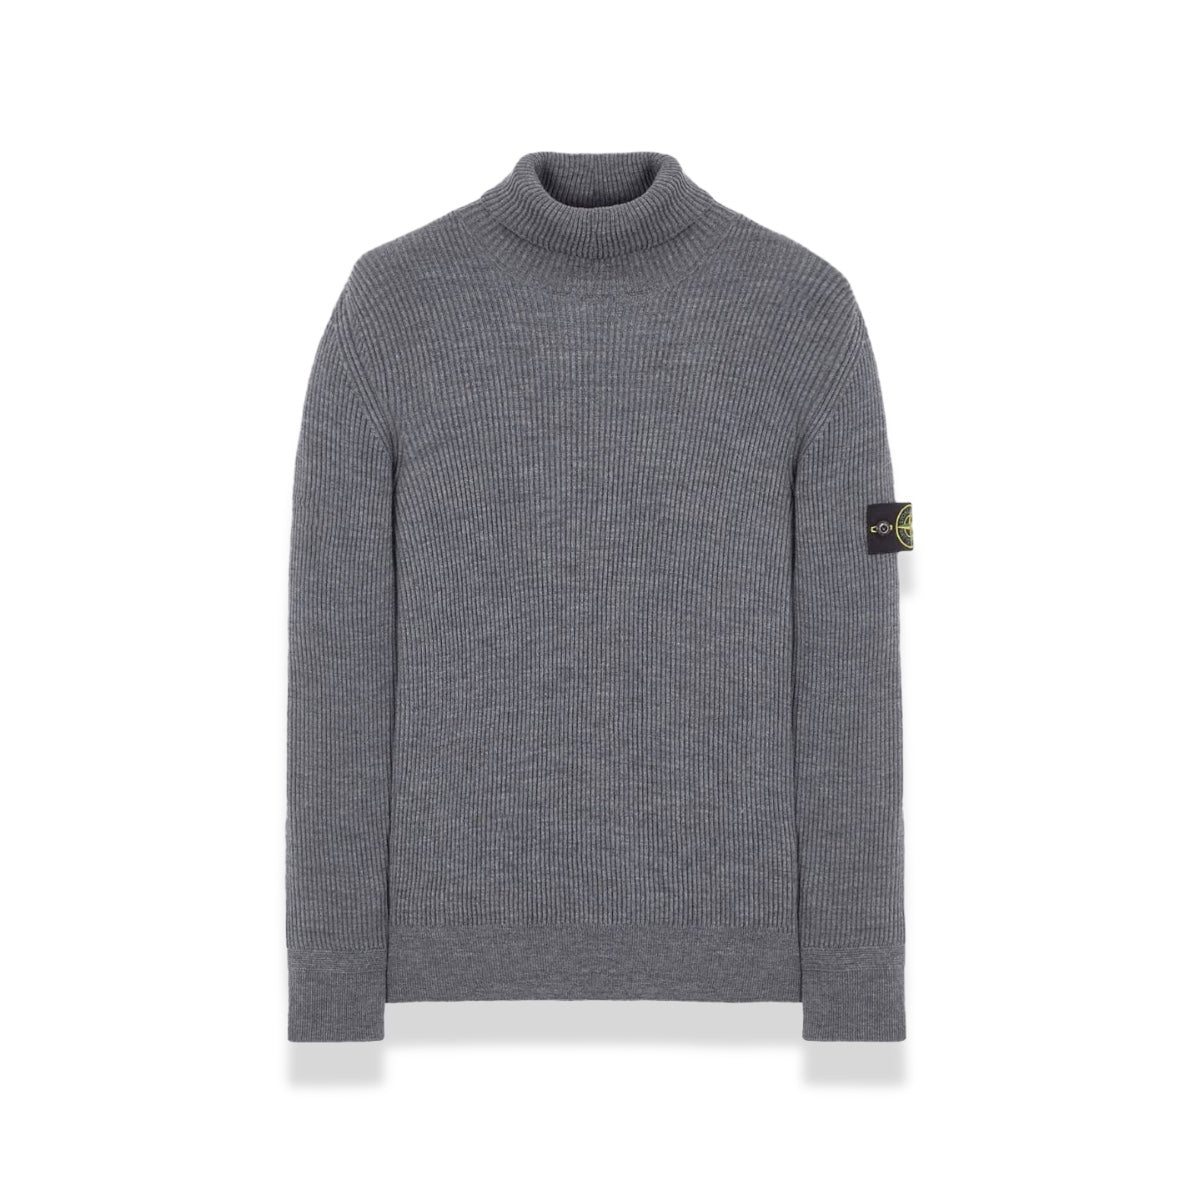 Stone Island - Rib Wool Sweater Grey